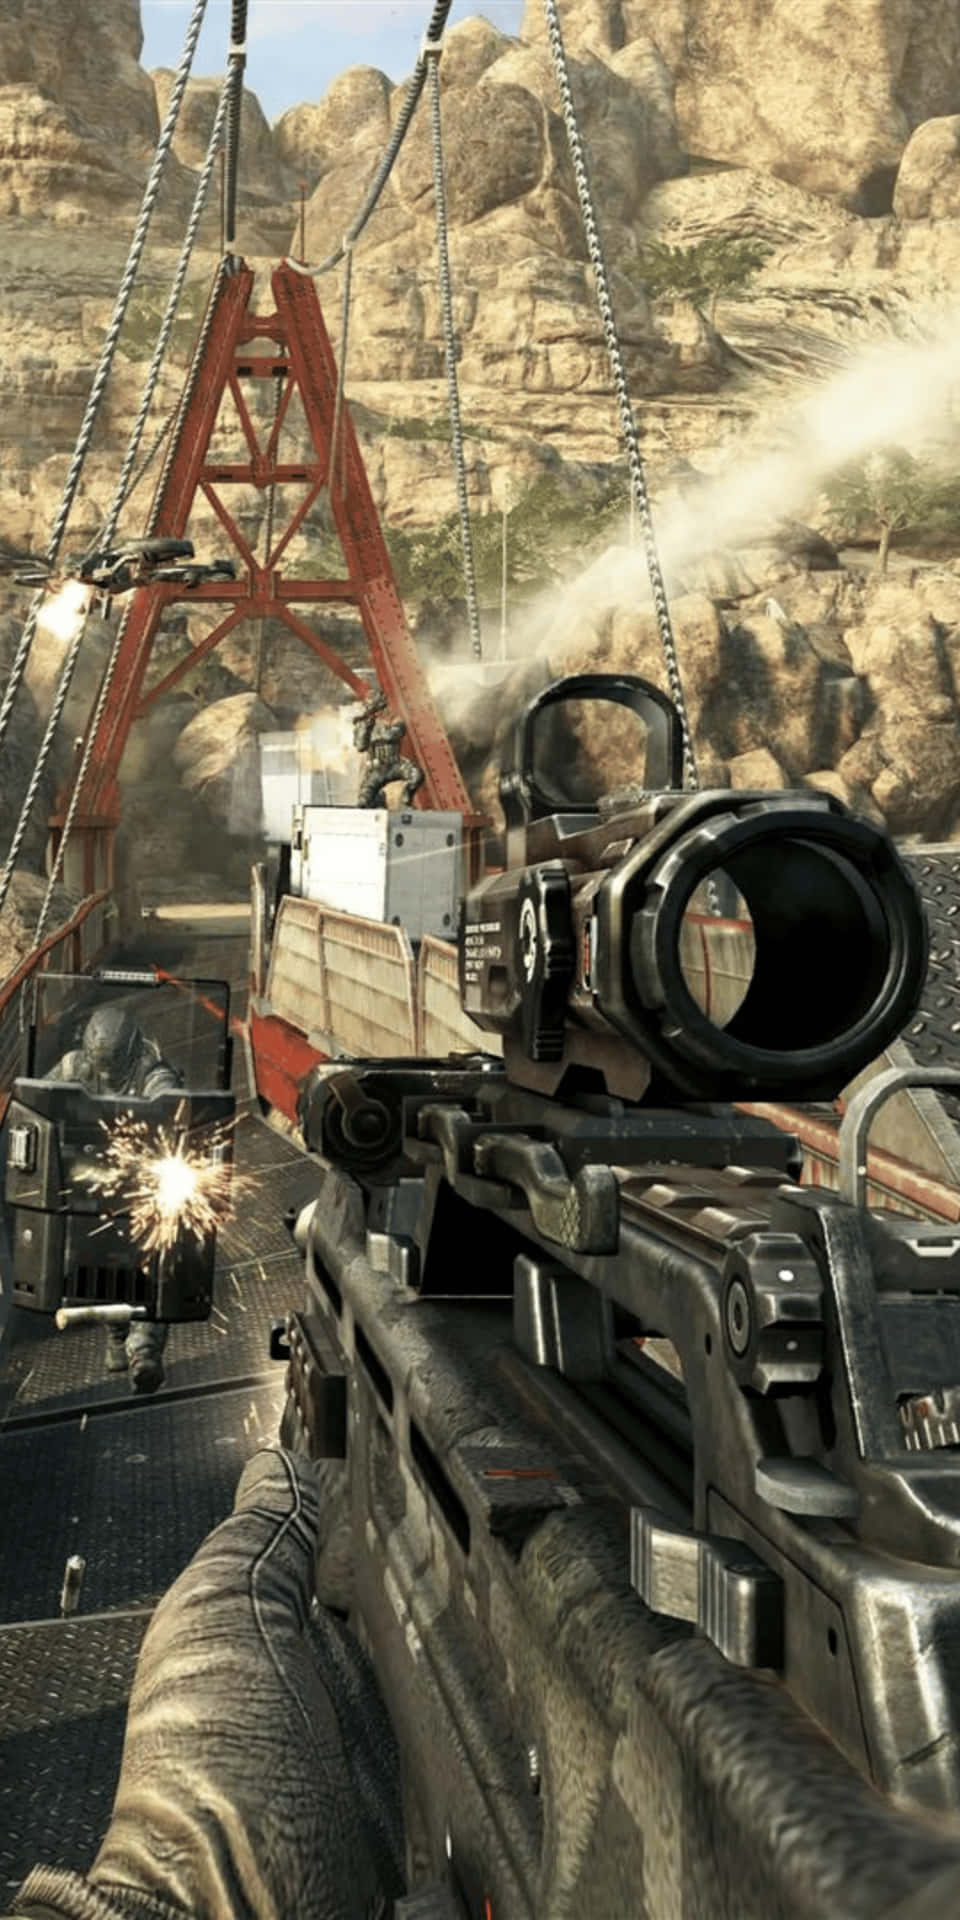 Pixel3 Bakgrundsbild För Call Of Duty Black Ops Cold War Med Smg Och Riktmedel.